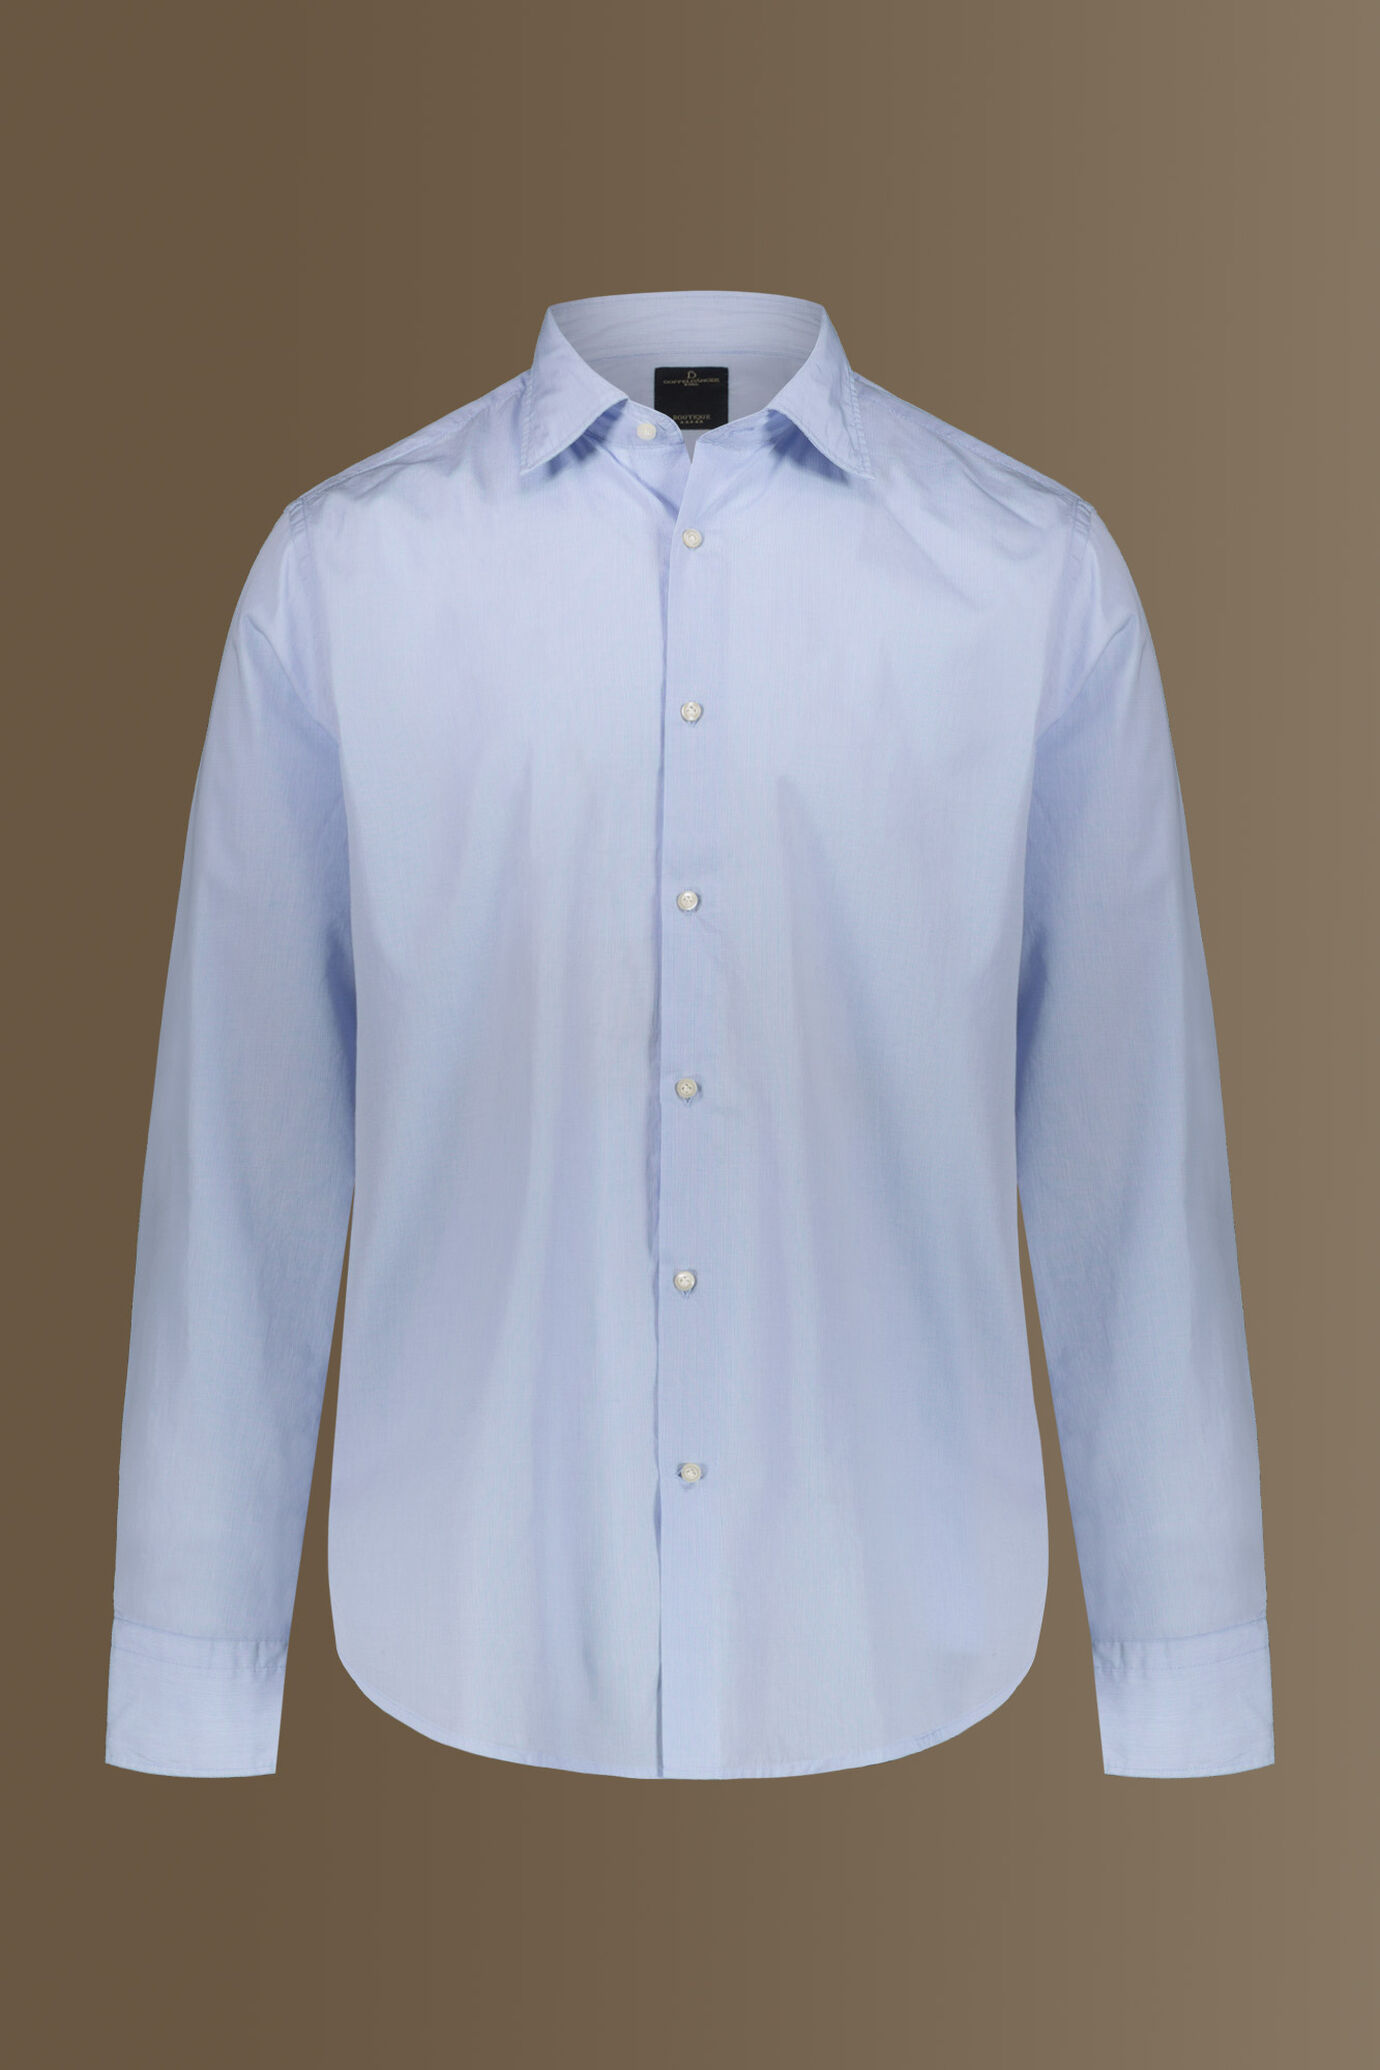 Camicia classica lavata 100% cotone collo francese tinto filo popeline microquadretti uomo image number 4